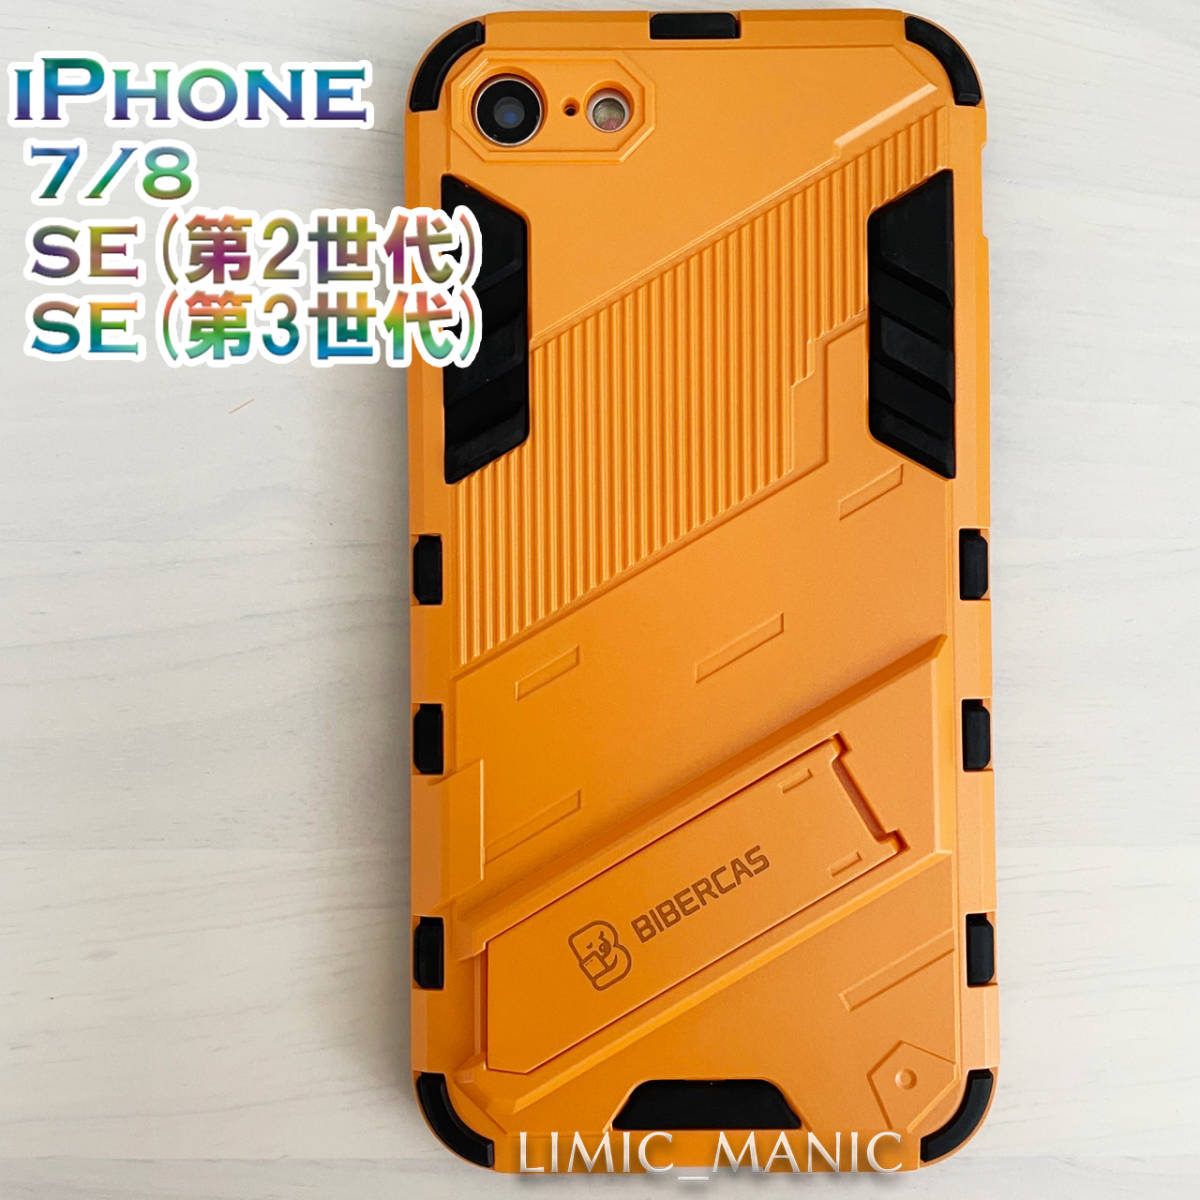 iPhone 7 8 SE (第2世代/第3世代) SE2 SE3 ケース スマホ バンパー アーマー スタンド マグネットホルダー対応 オレンジ アイフォン_画像1